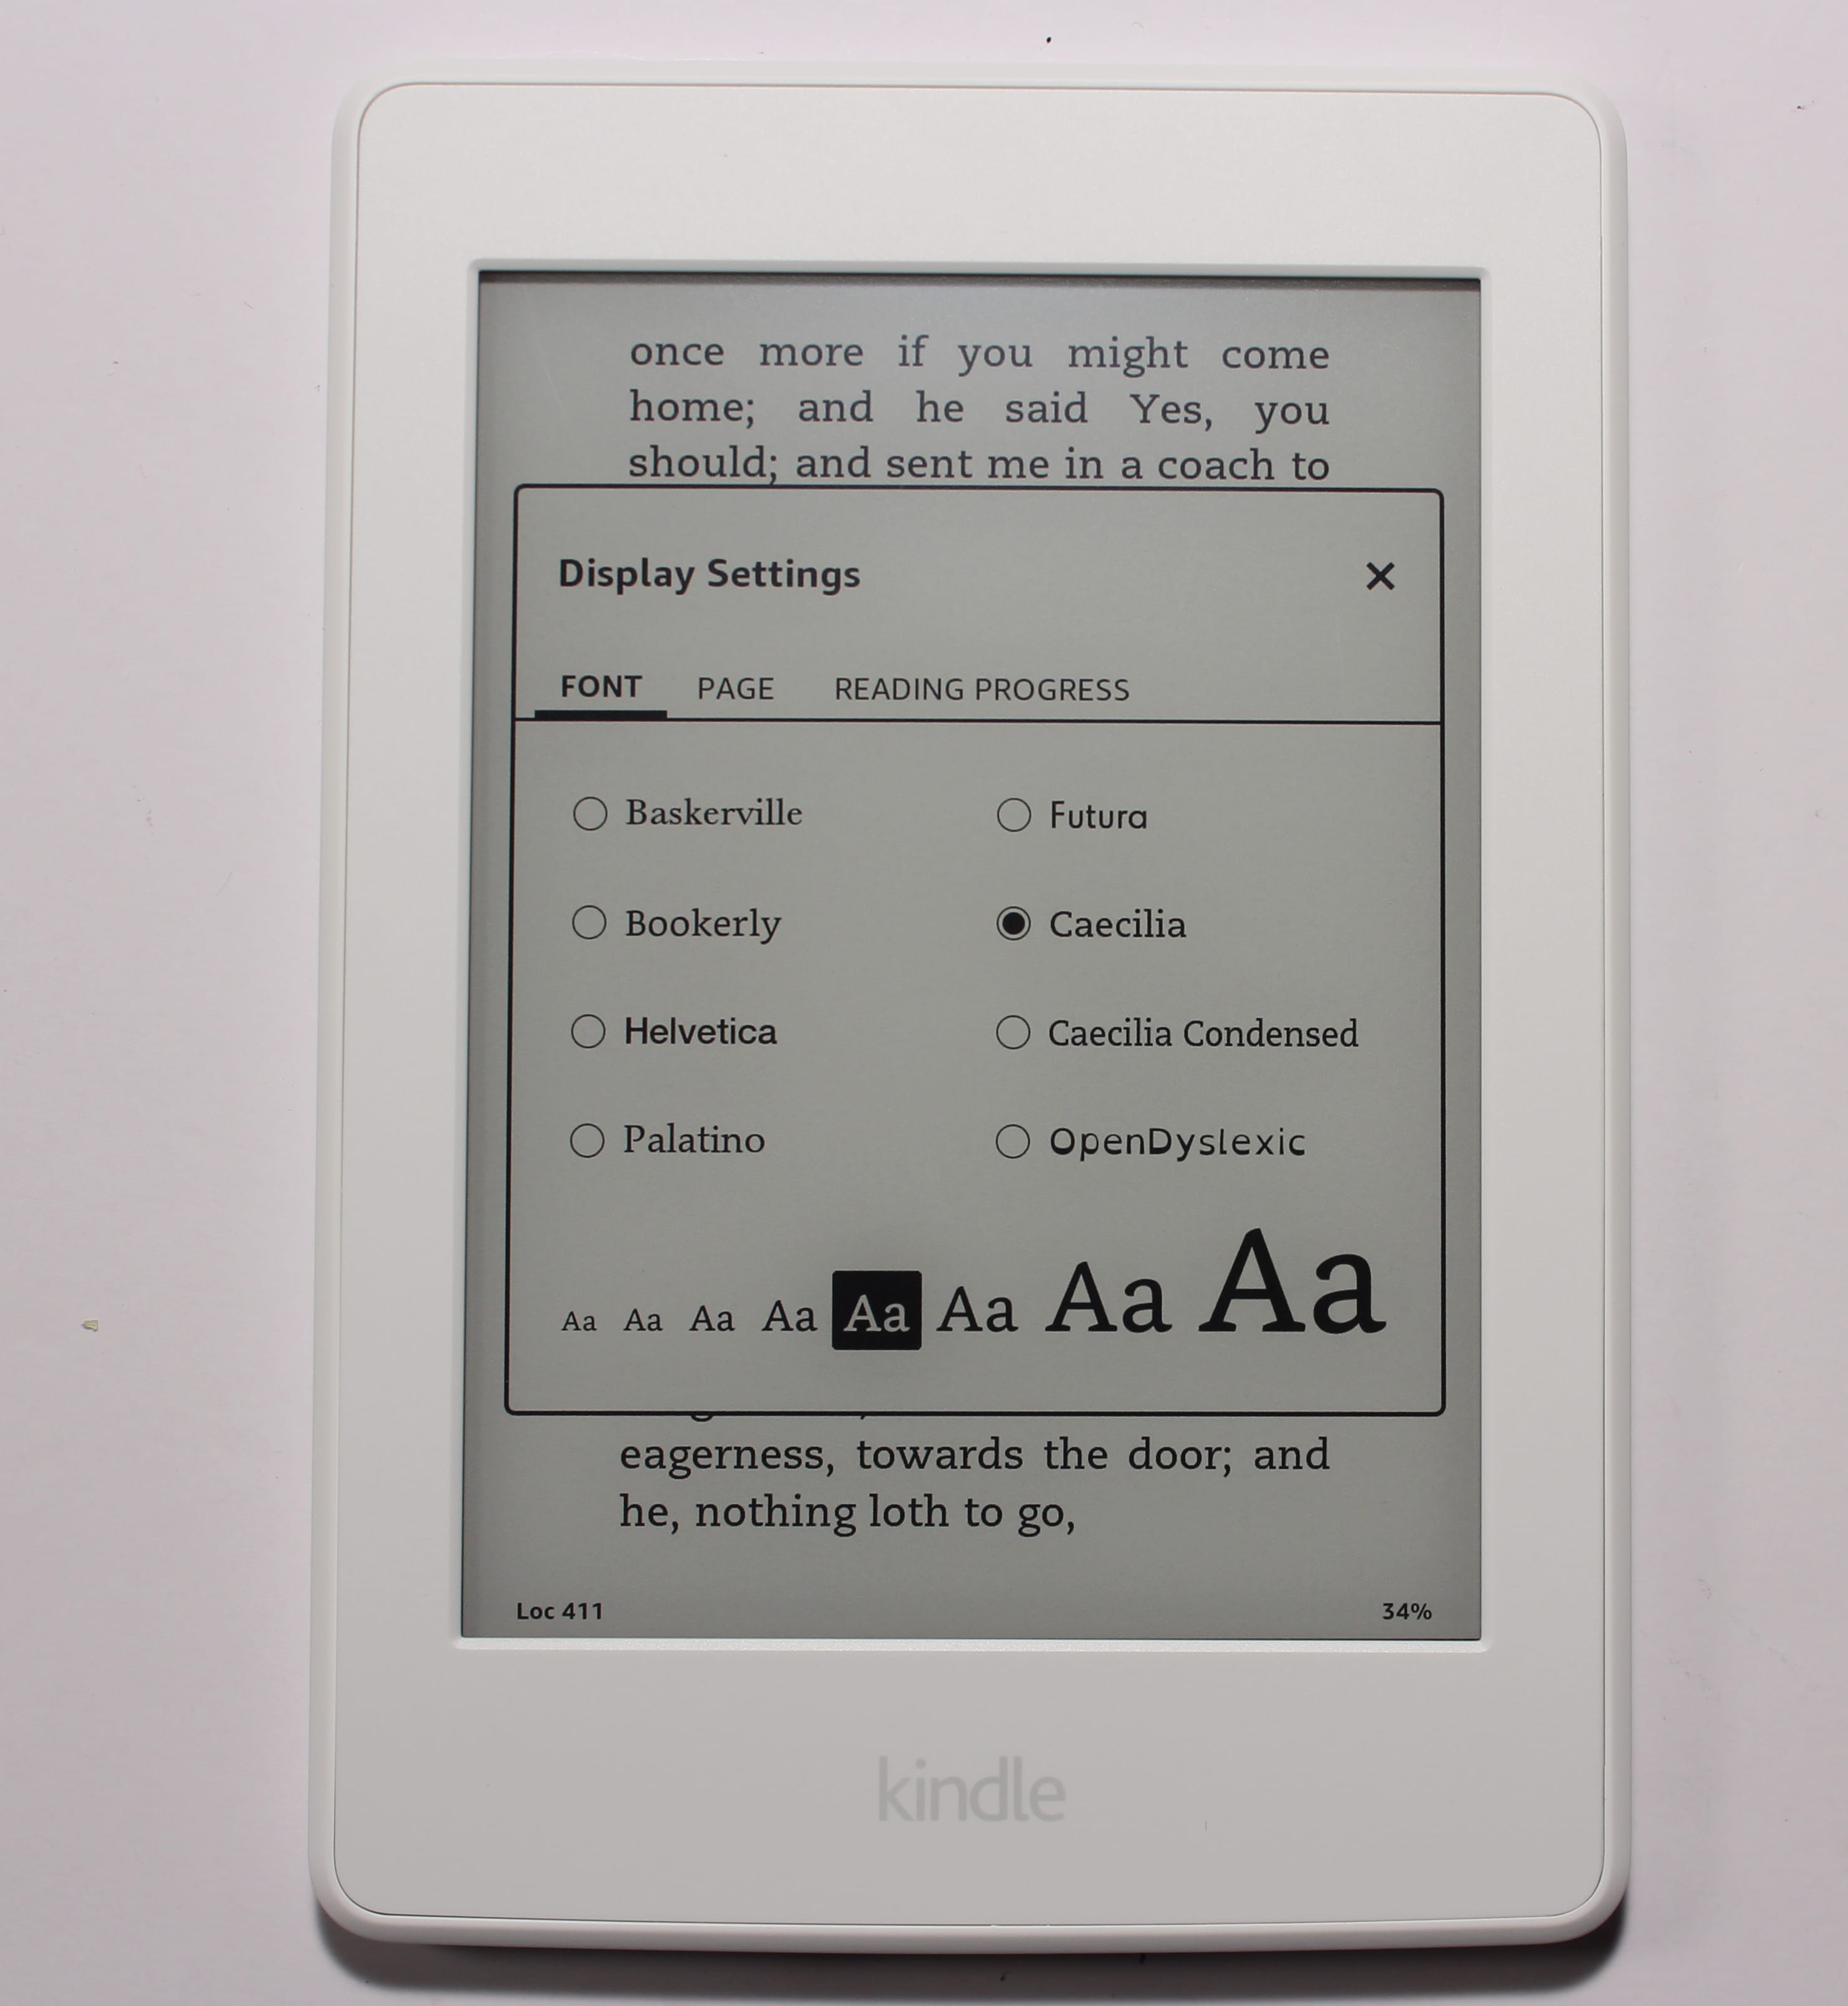 Kindle Paperwhite 2016 : fiche technique, prix et discussion